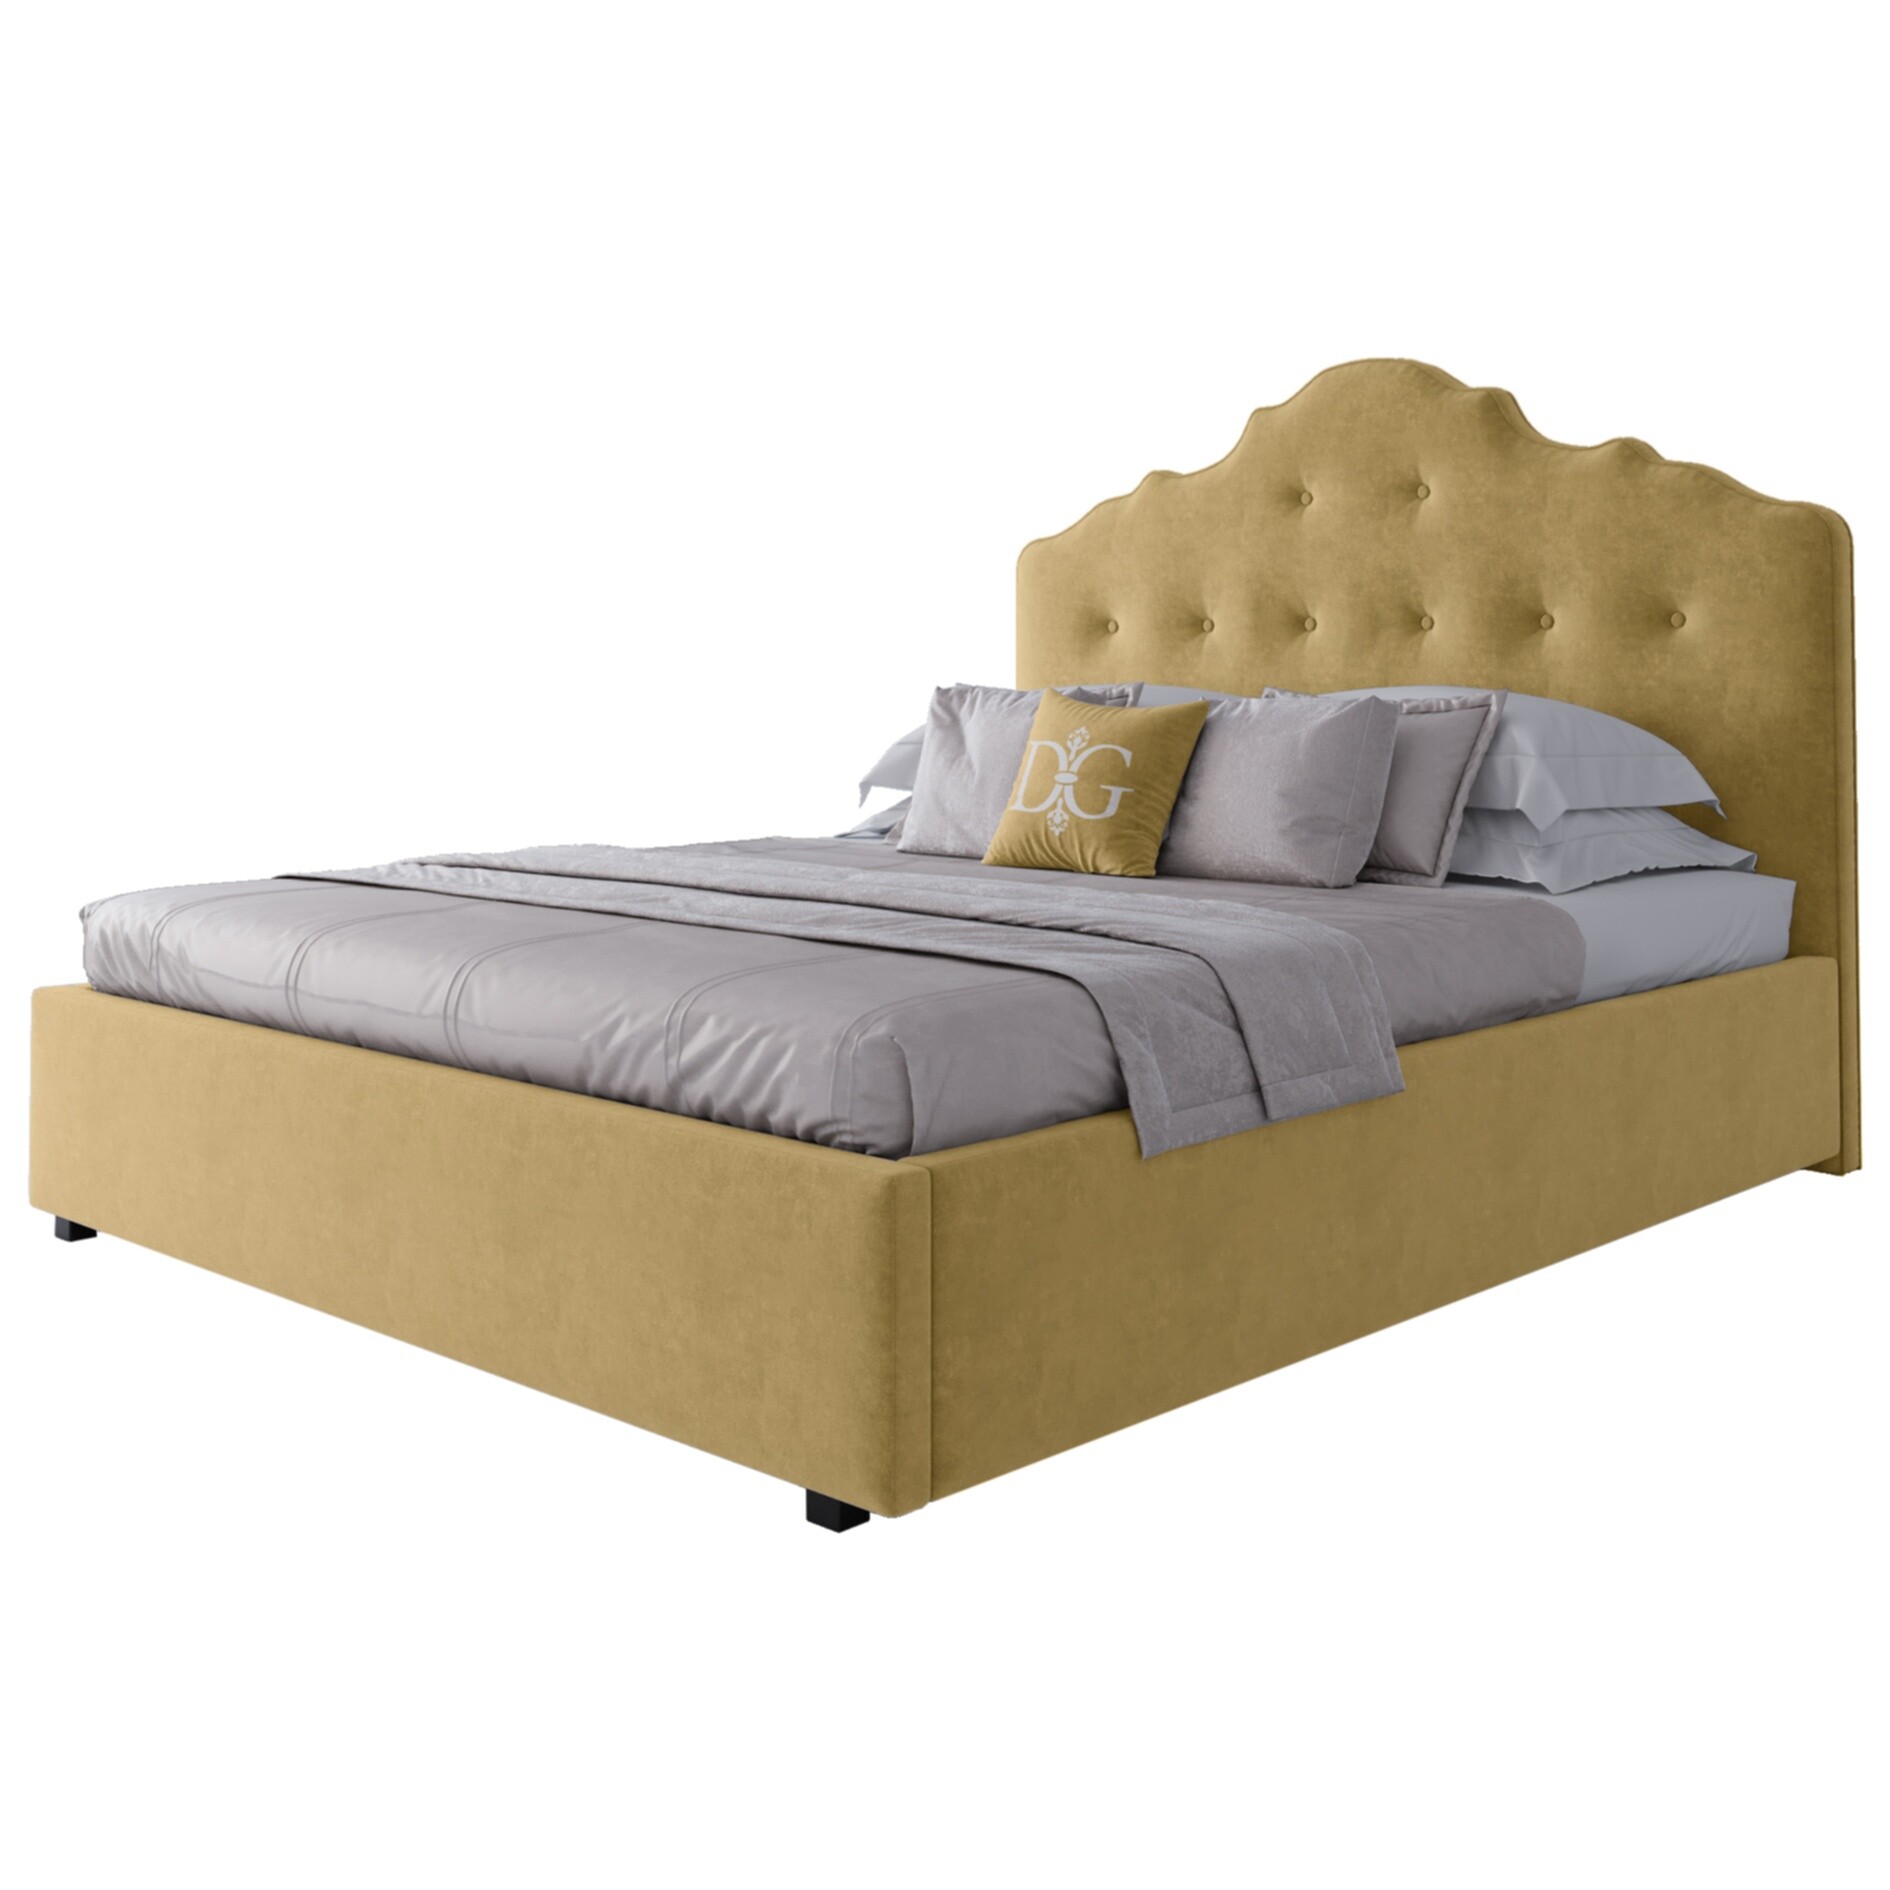 Кровать двуспальная 160х200 см желтая Palace